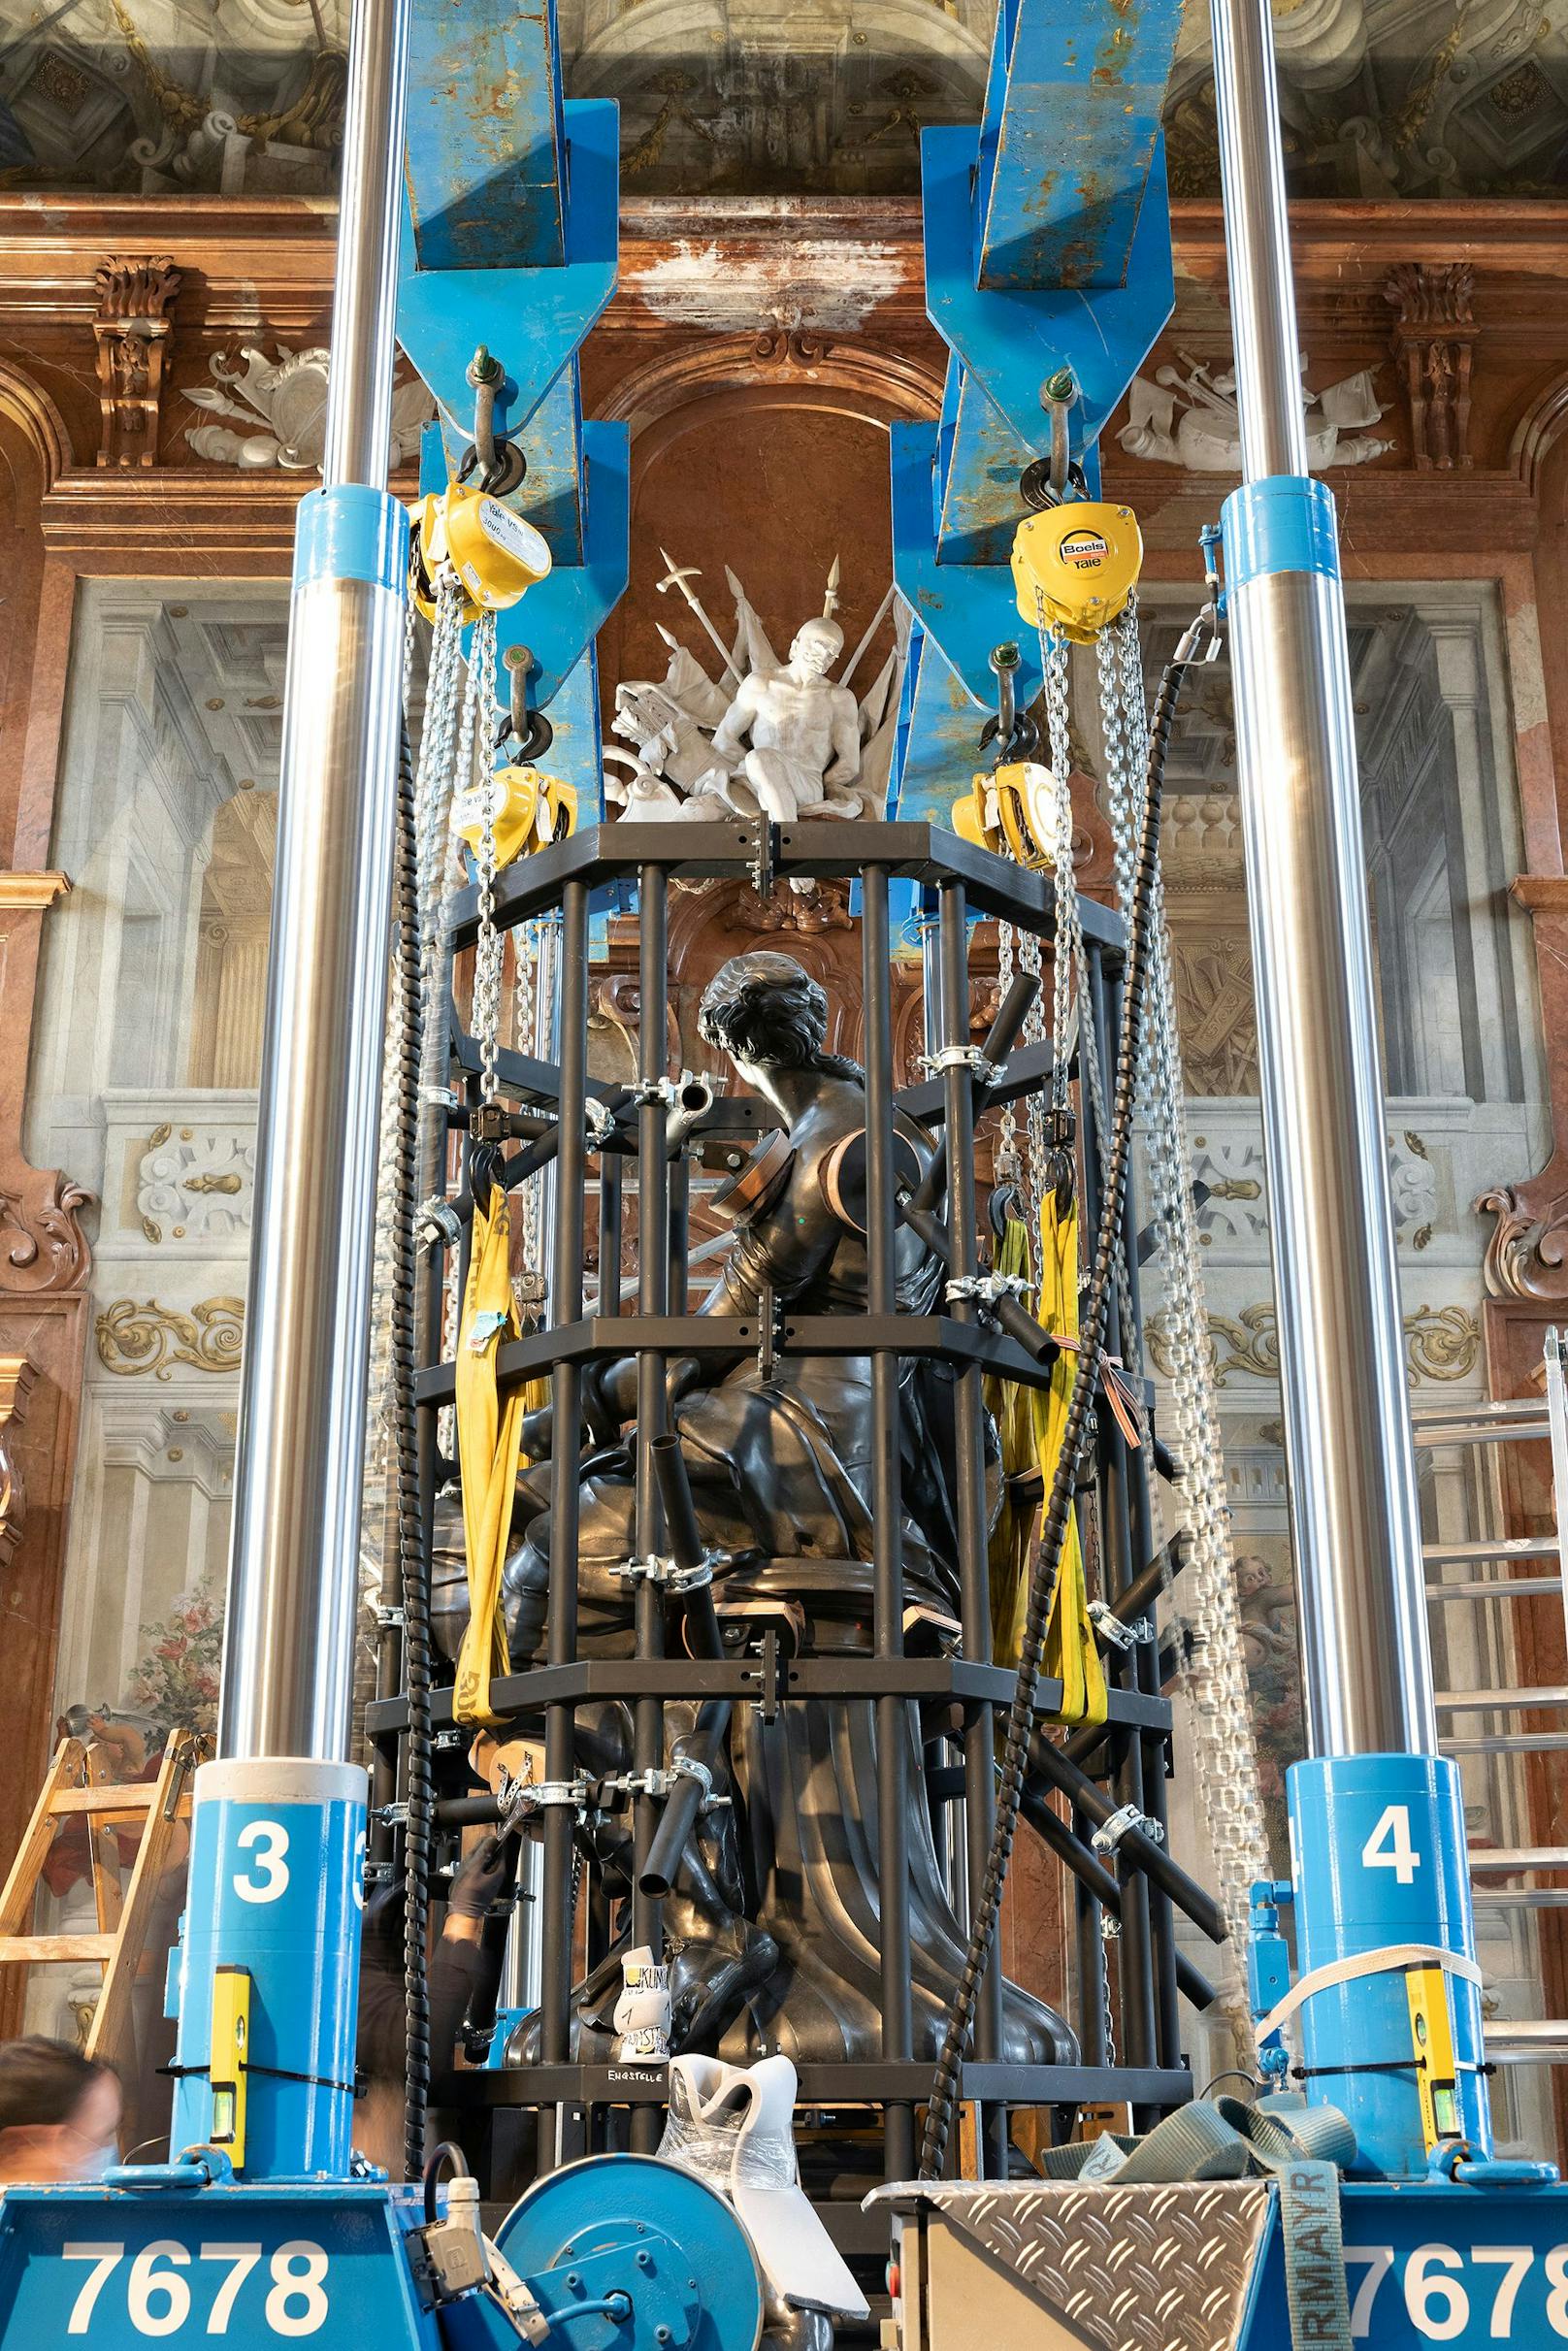 Über eine Leihdauer von 99 Jahren waren sie im Belvedere aufgestellt. Nun wurden die Skulpturen abgebaut und zur Restaurierung ins Depot des Wien Museums gebracht.